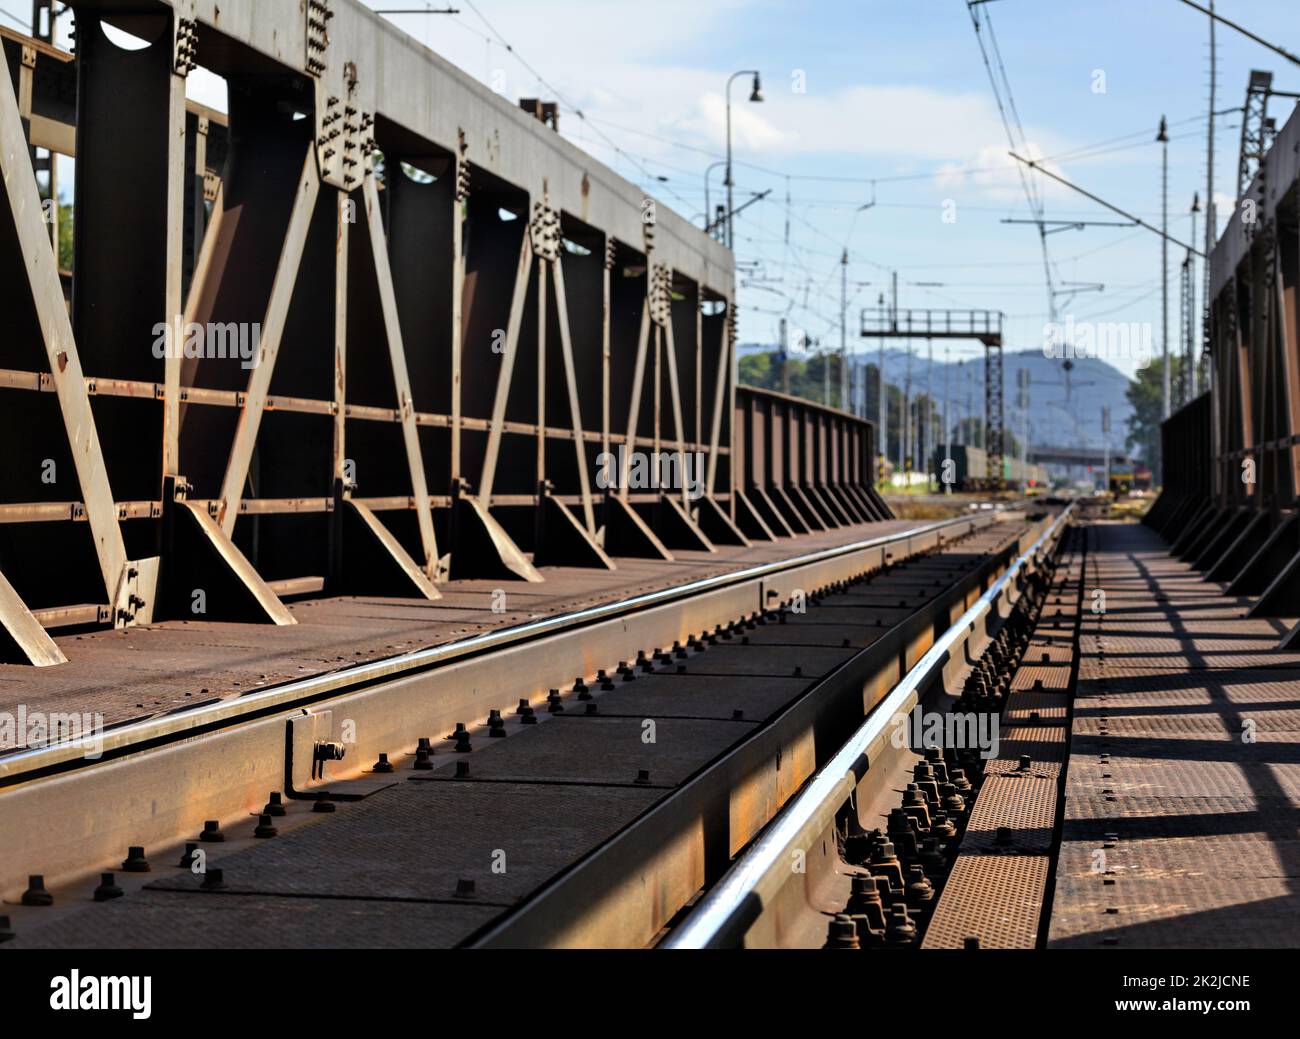 Vista dal vecchio ponte della ferrovia, marrone dalla ruggine, binari, cavi e pali elettrici visibili in lontananza. Foto Stock